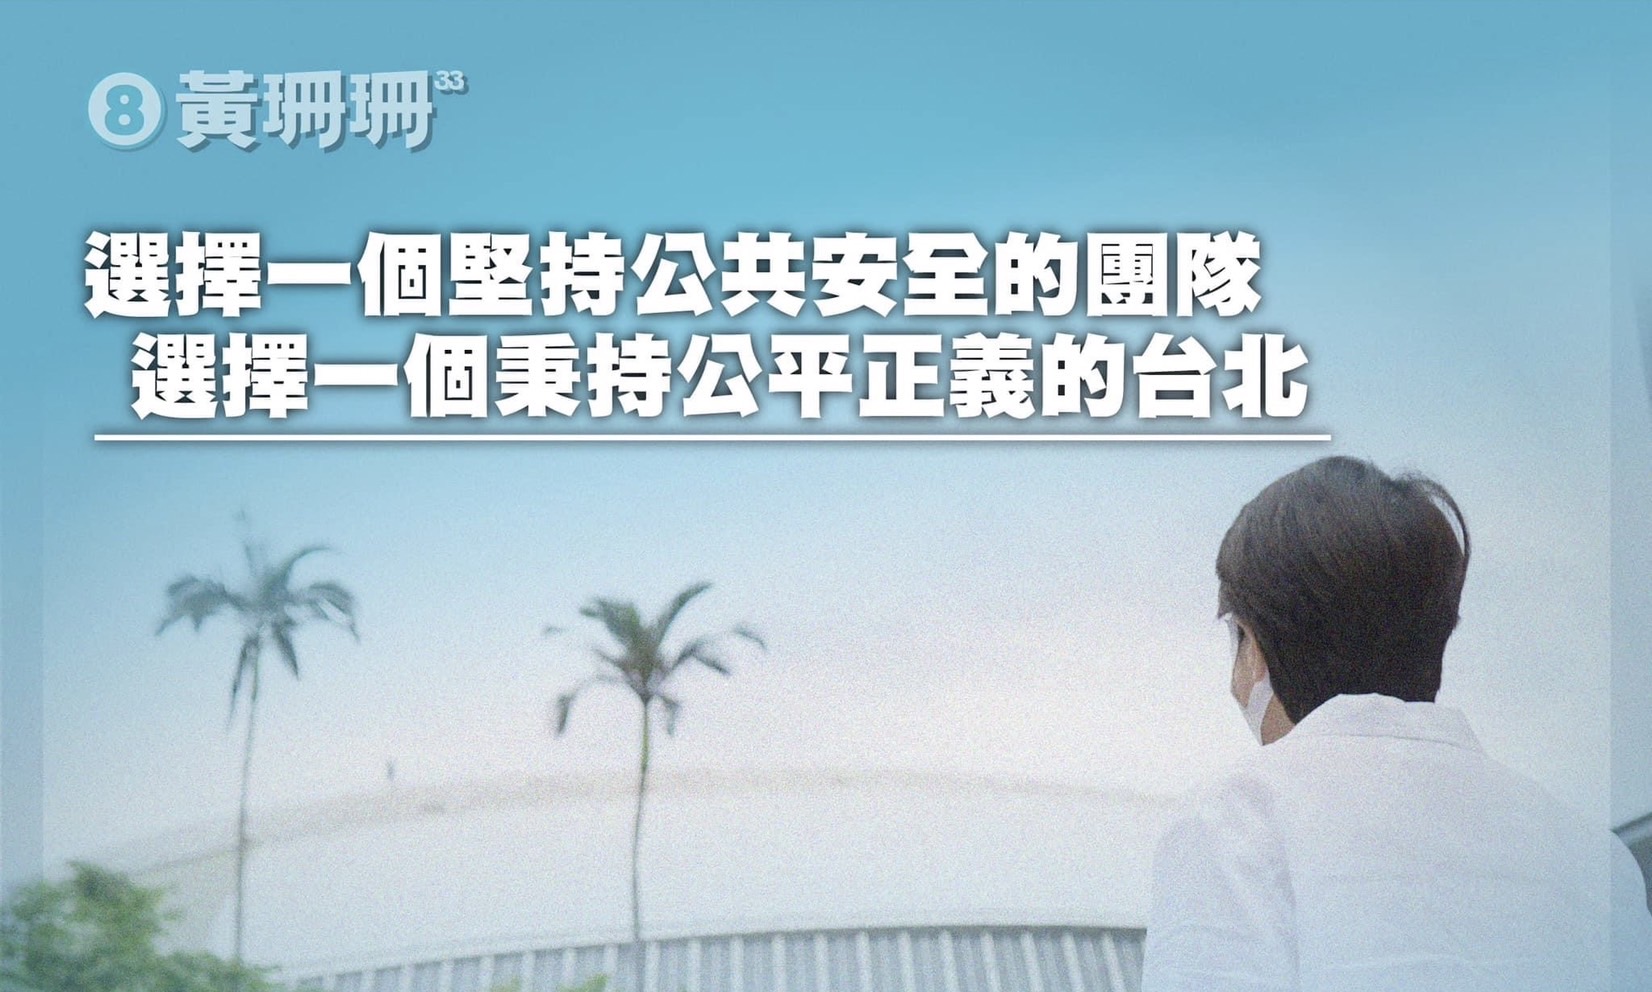 黃珊珊》將大巨蛋應得的回饋還給台北市民